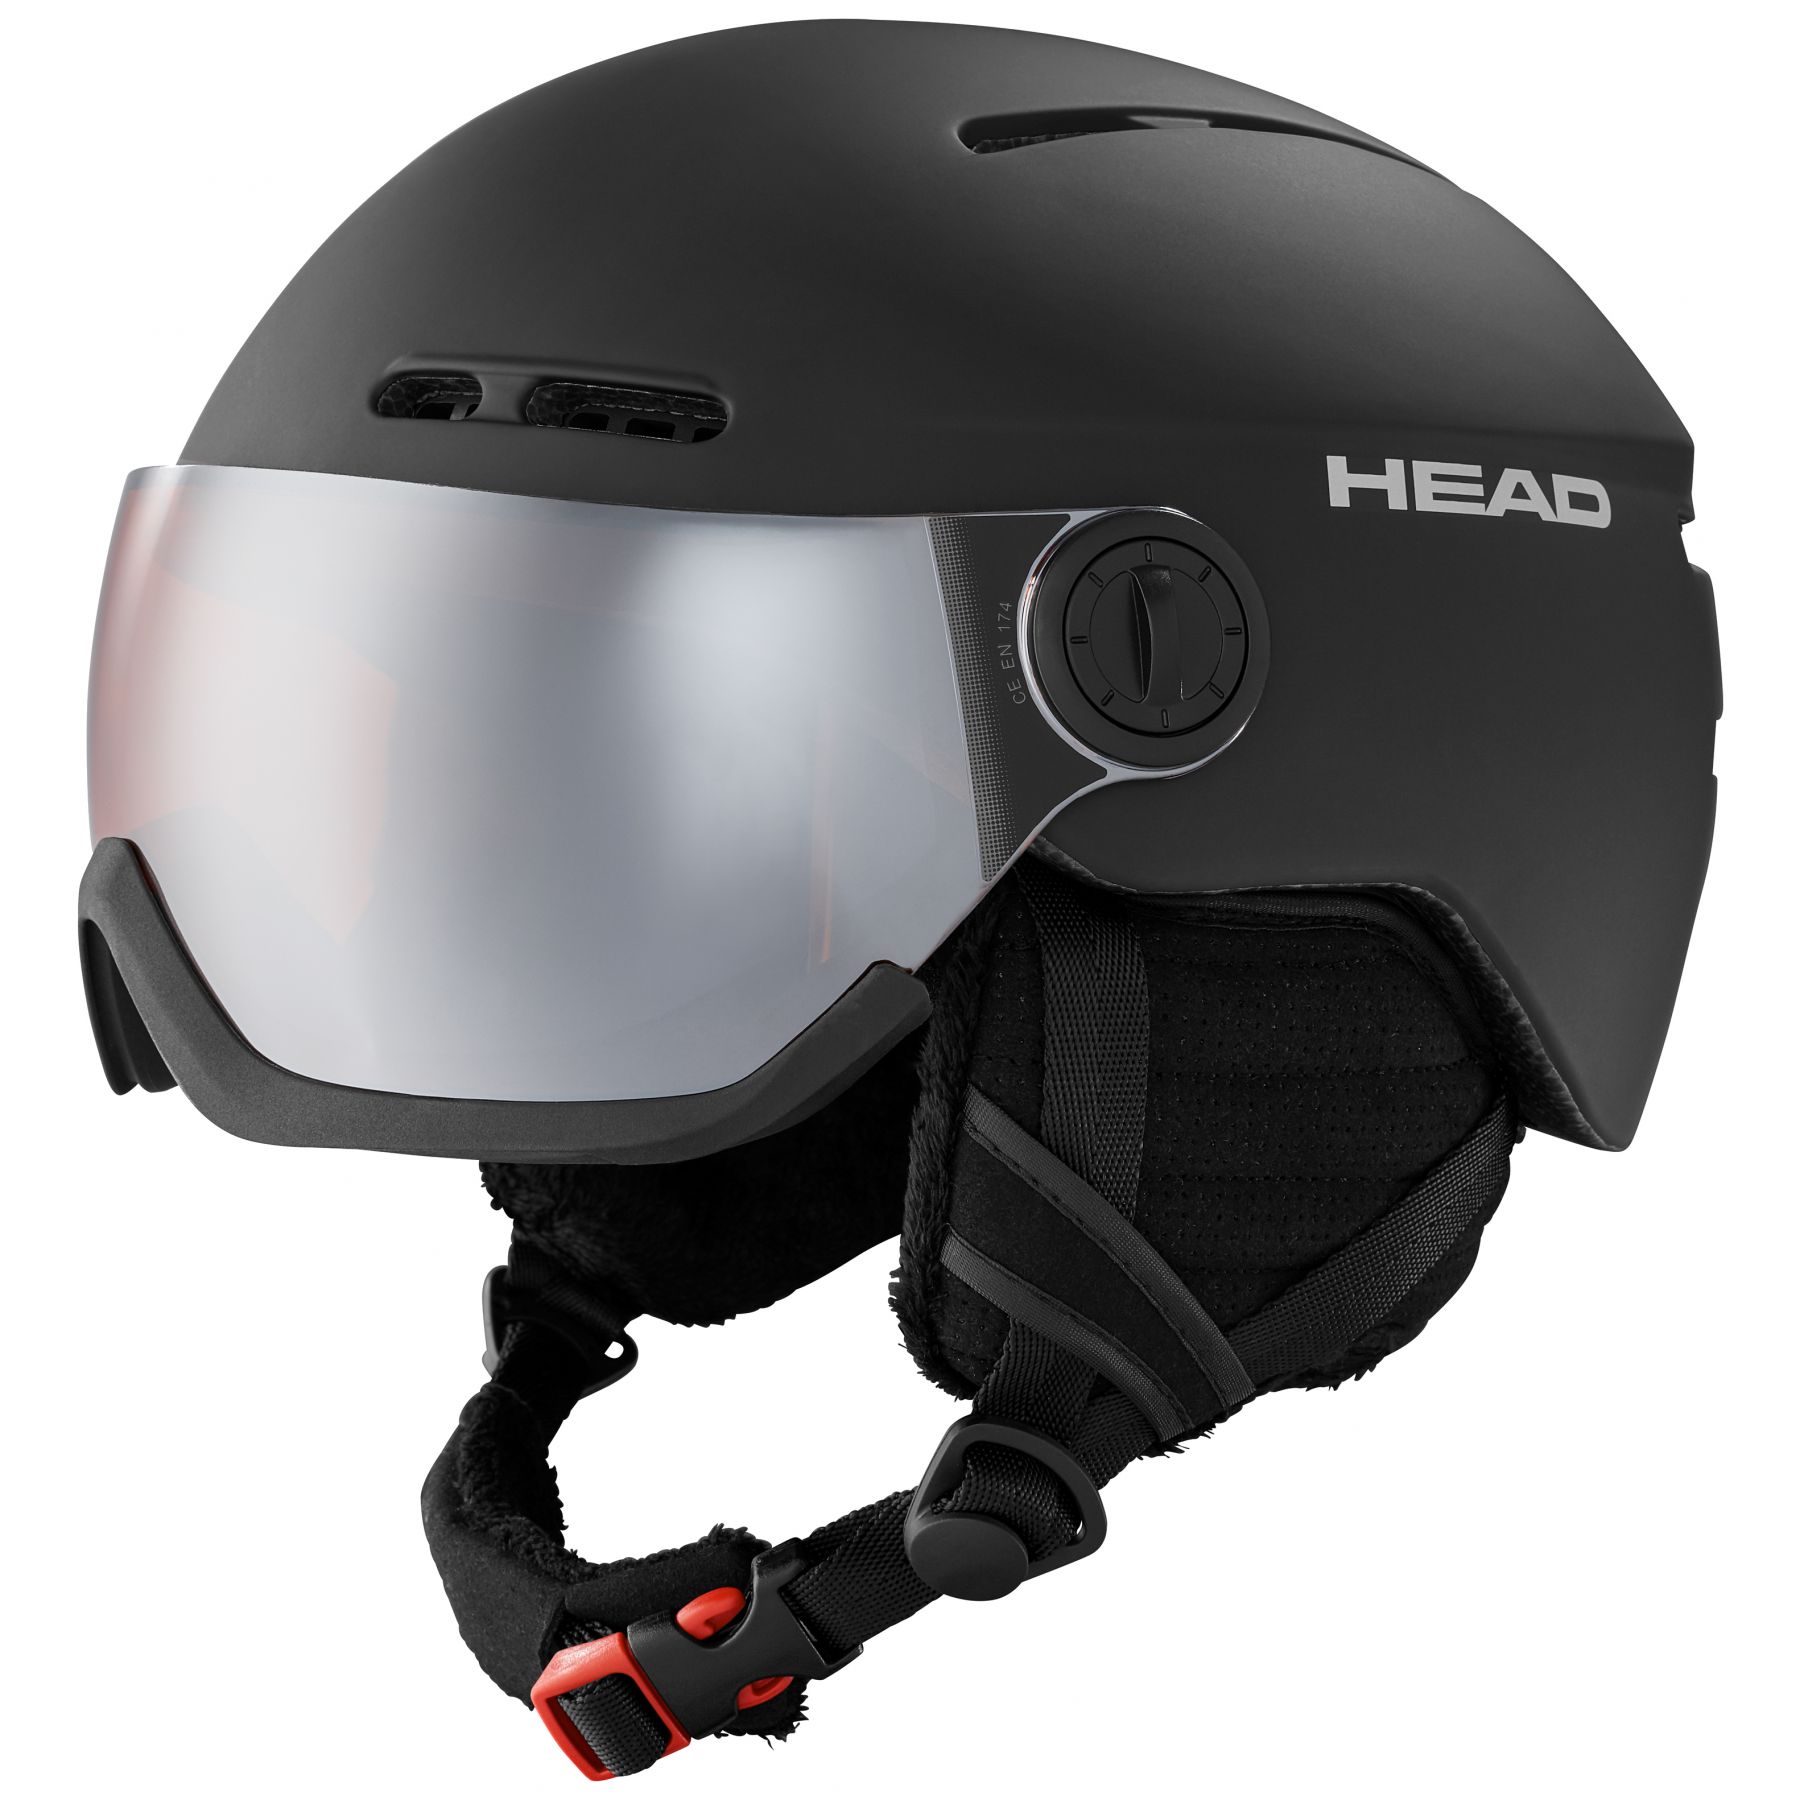 Brug Head Knight, skihjelm med visir, sort til en forbedret oplevelse